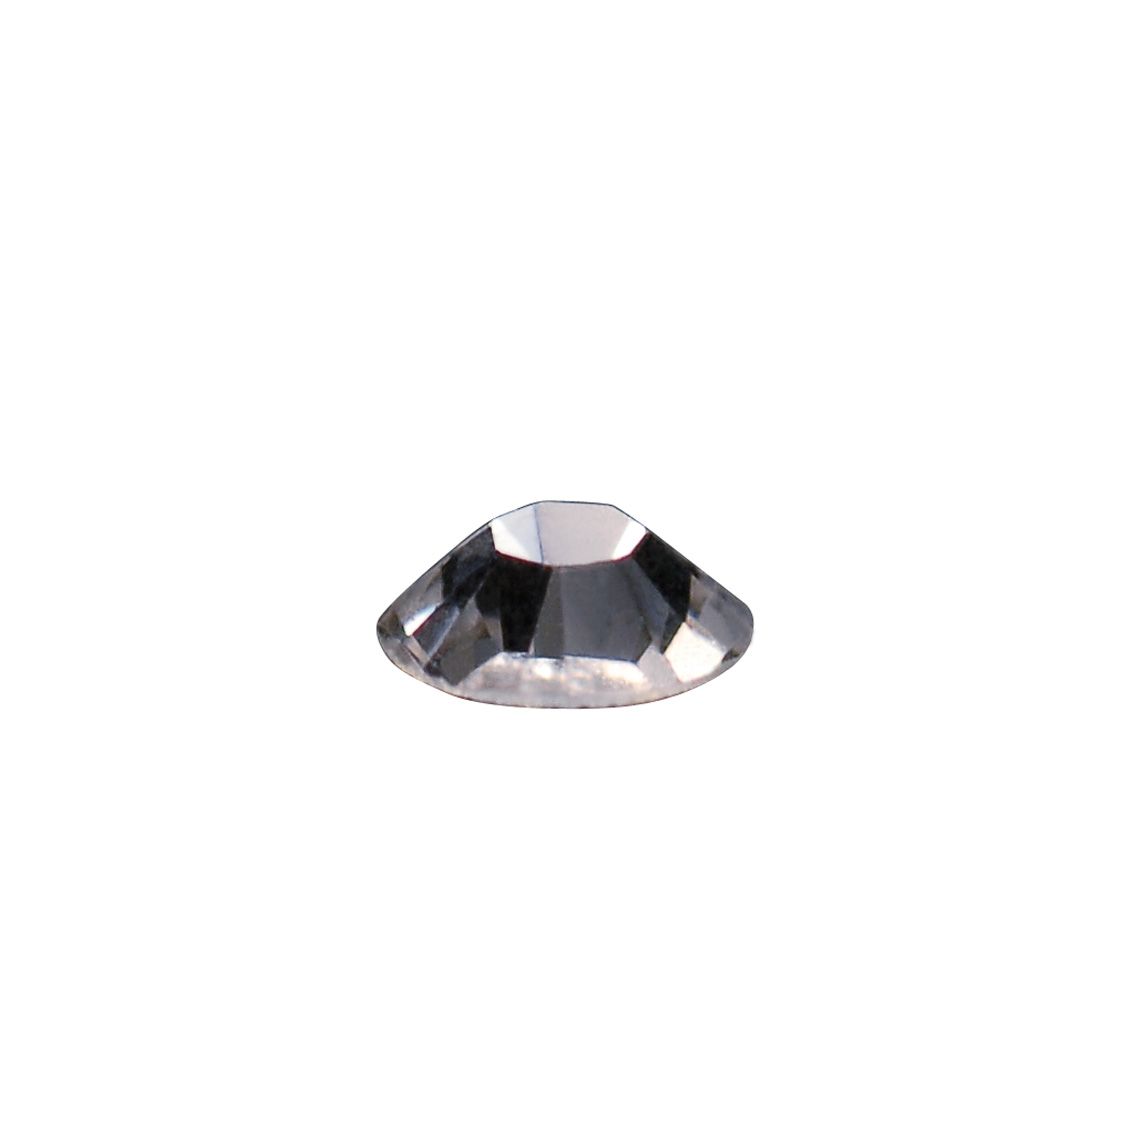 Swarovski® Crystals for Nail Art Crystal size SS6 1440 pcs.